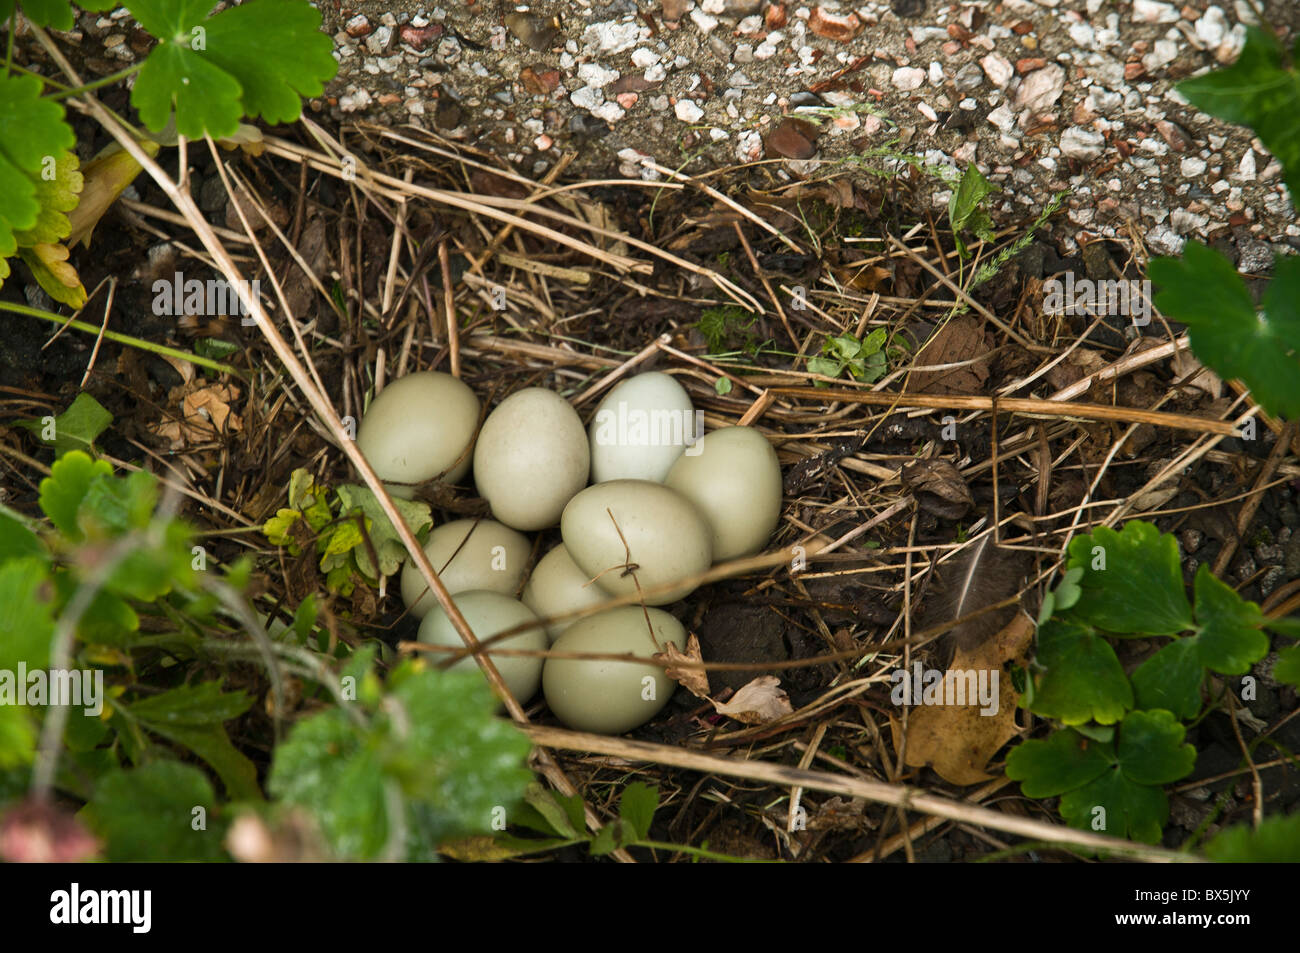 Faisan de Colchide Phasianus colchicus dh UK faisan oeufs dans des nids d'oiseaux oiseaux faisans Banque D'Images